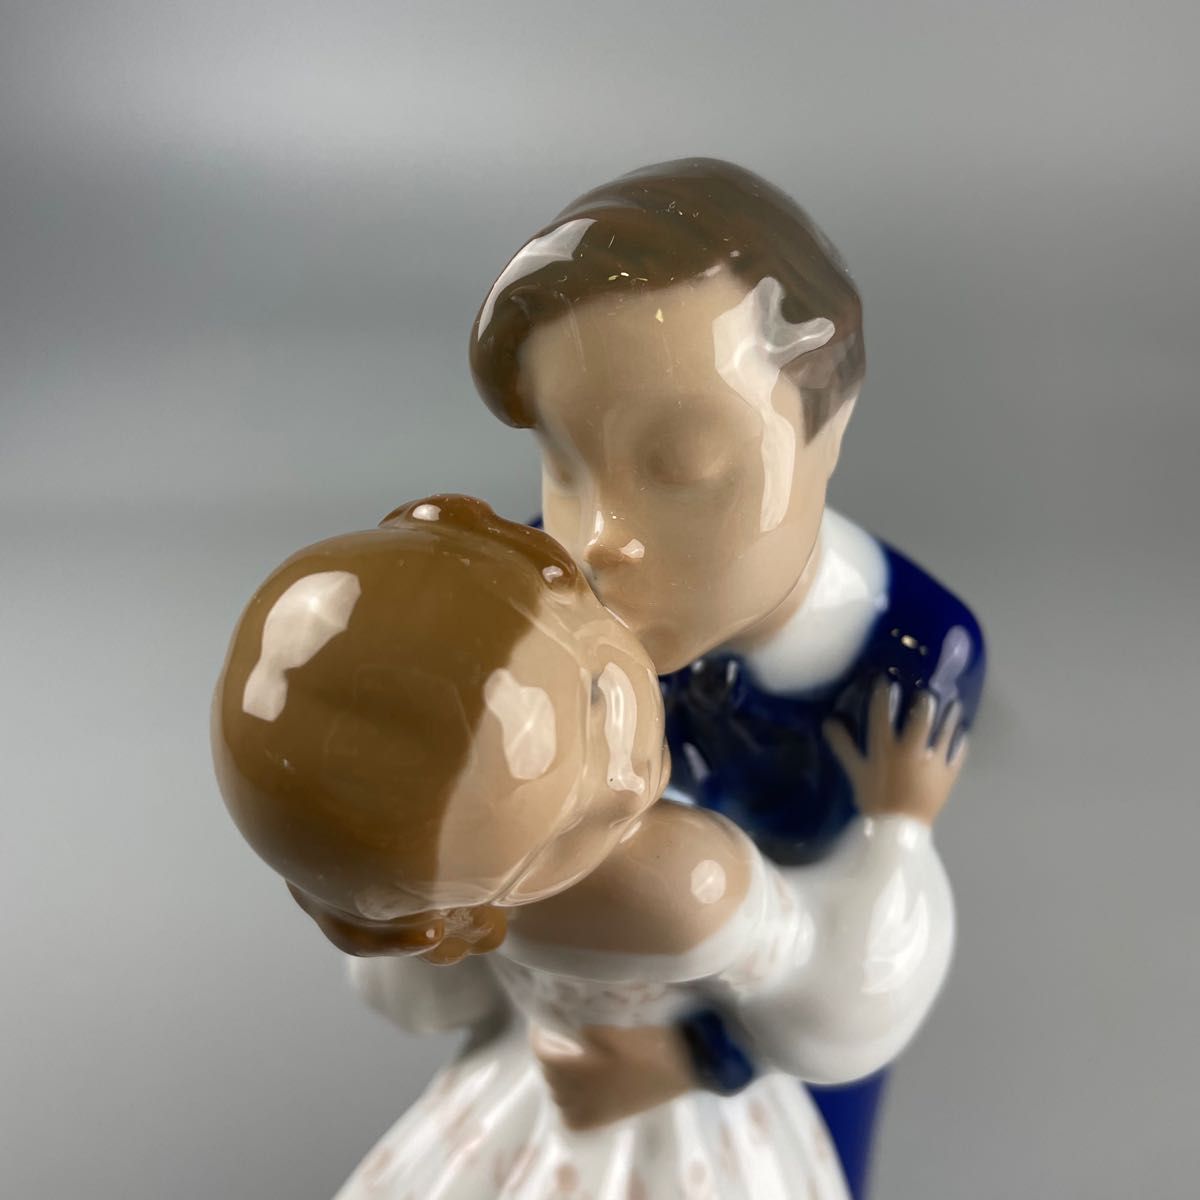 ビングオーグレンダール B&G 男の子と女の子 置物 陶器 人形 2162